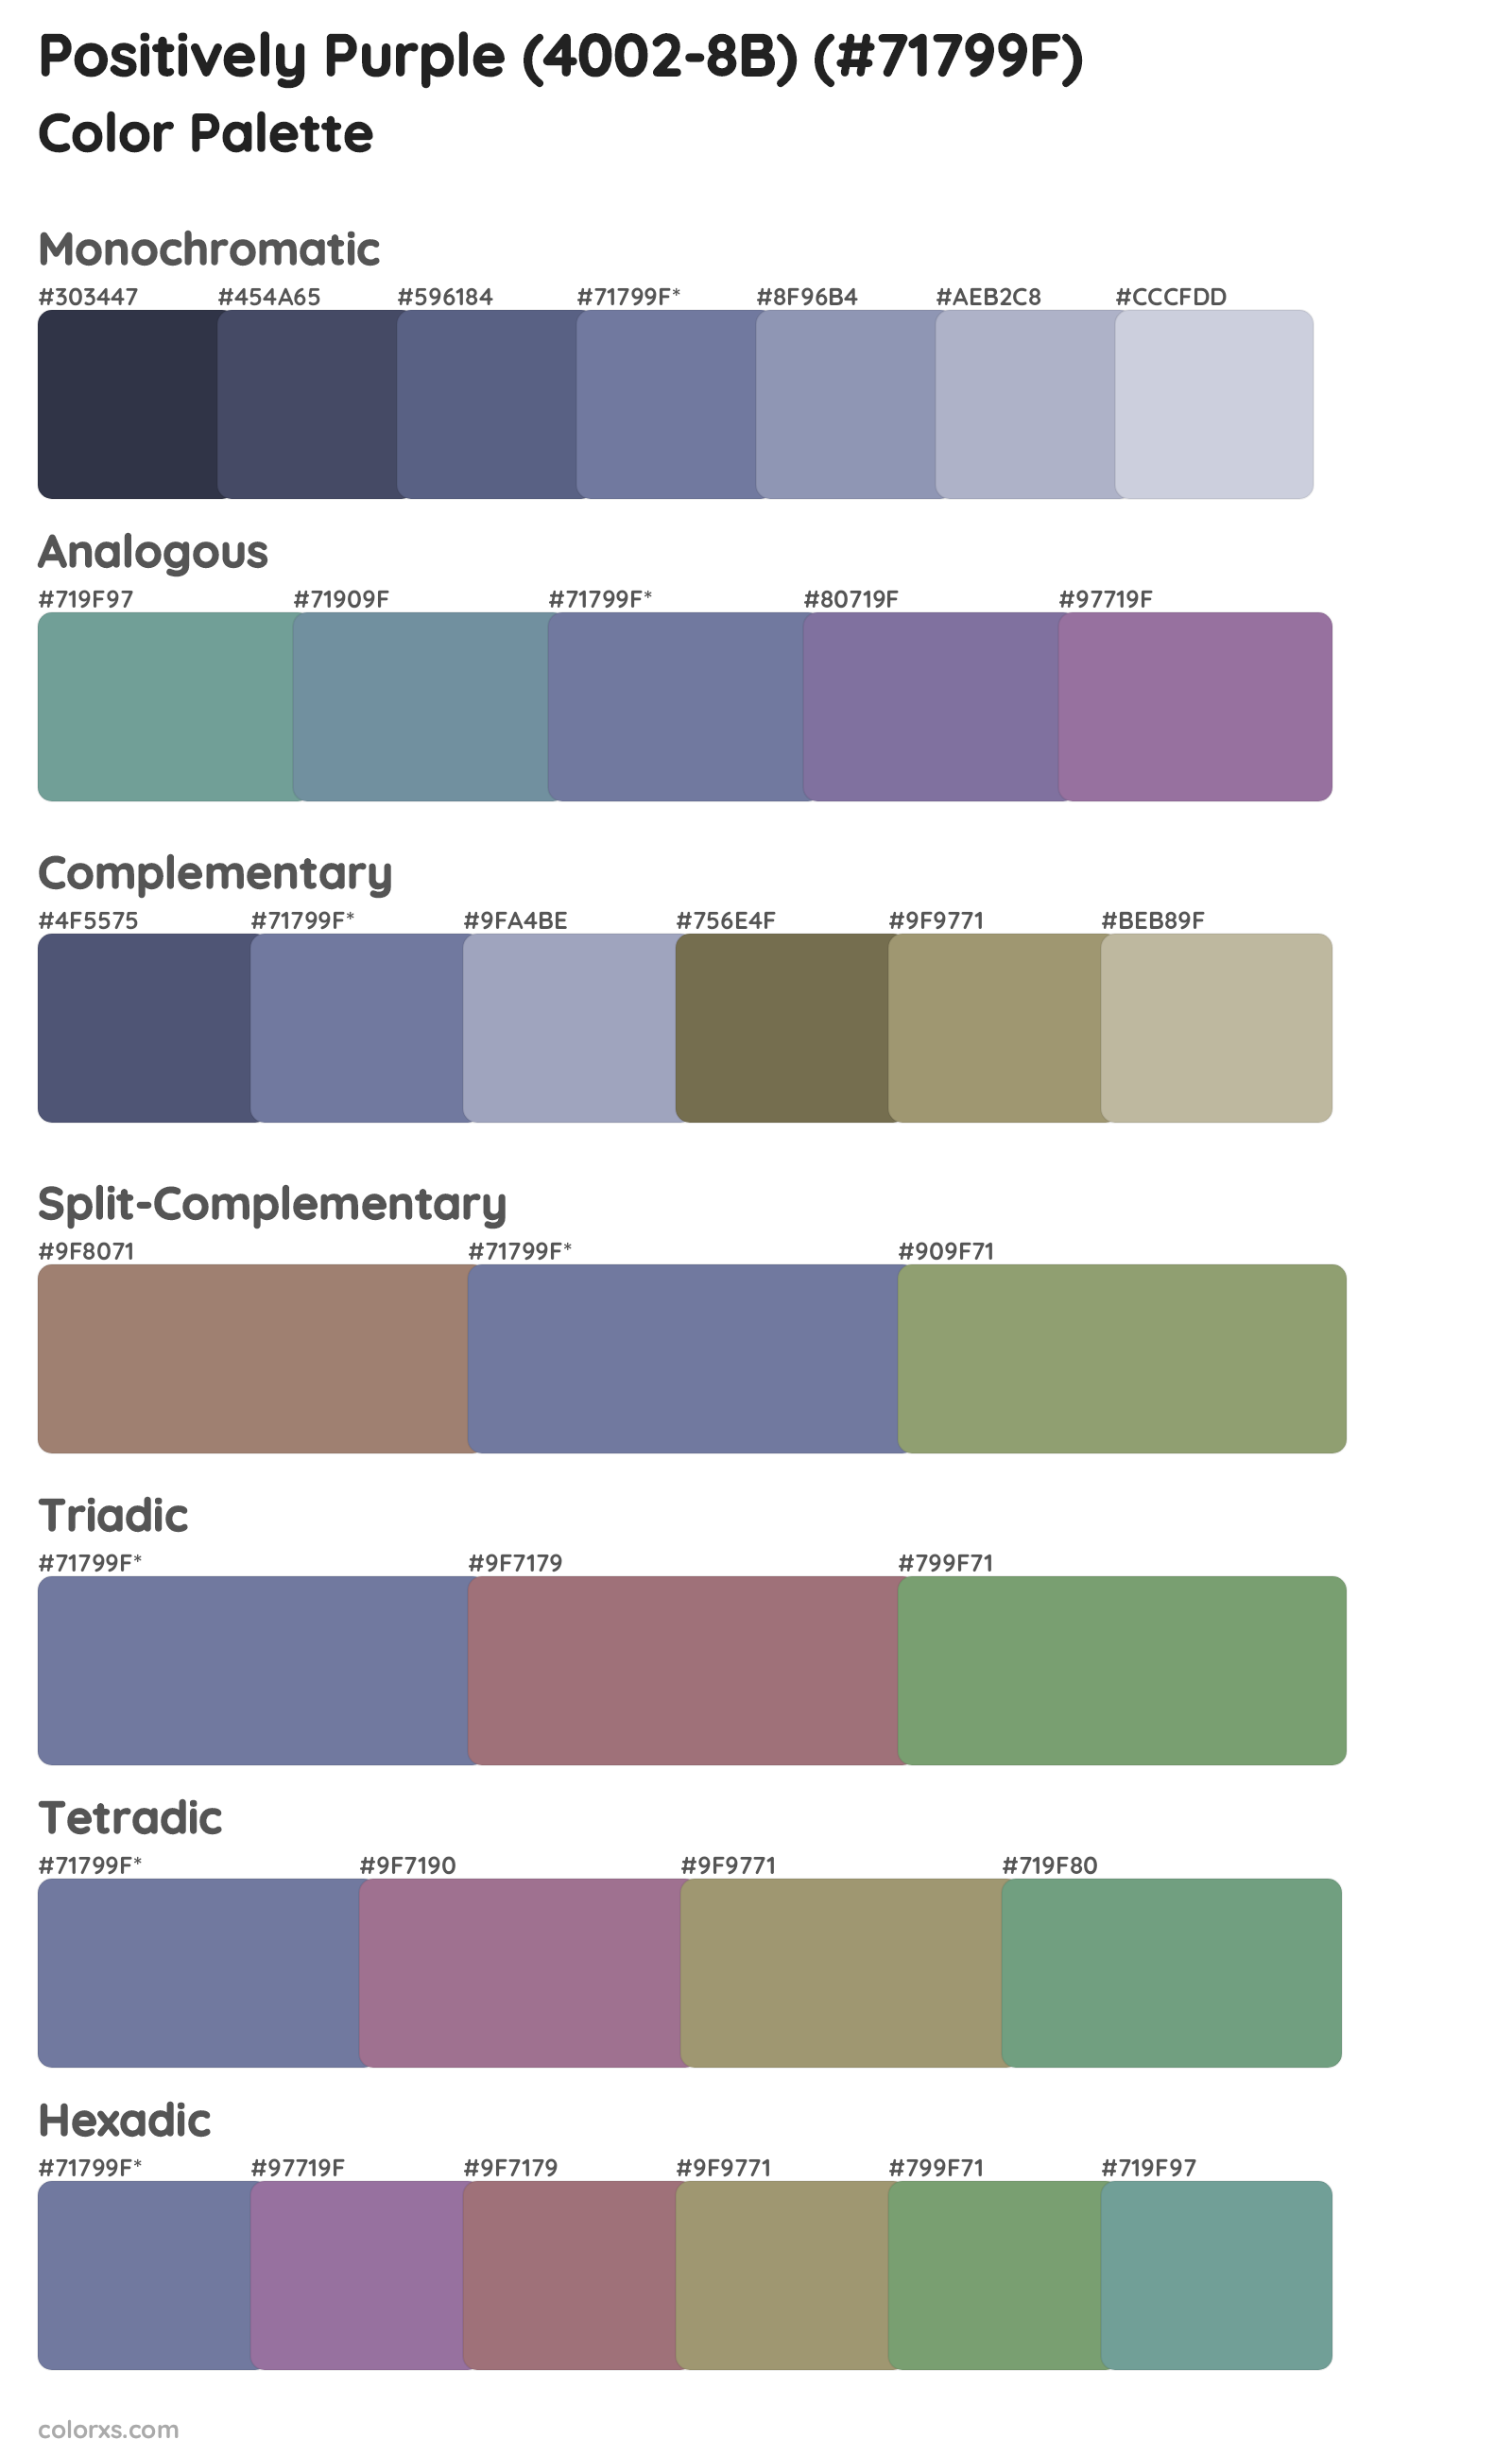 Positively Purple (4002-8B) Color Scheme Palettes